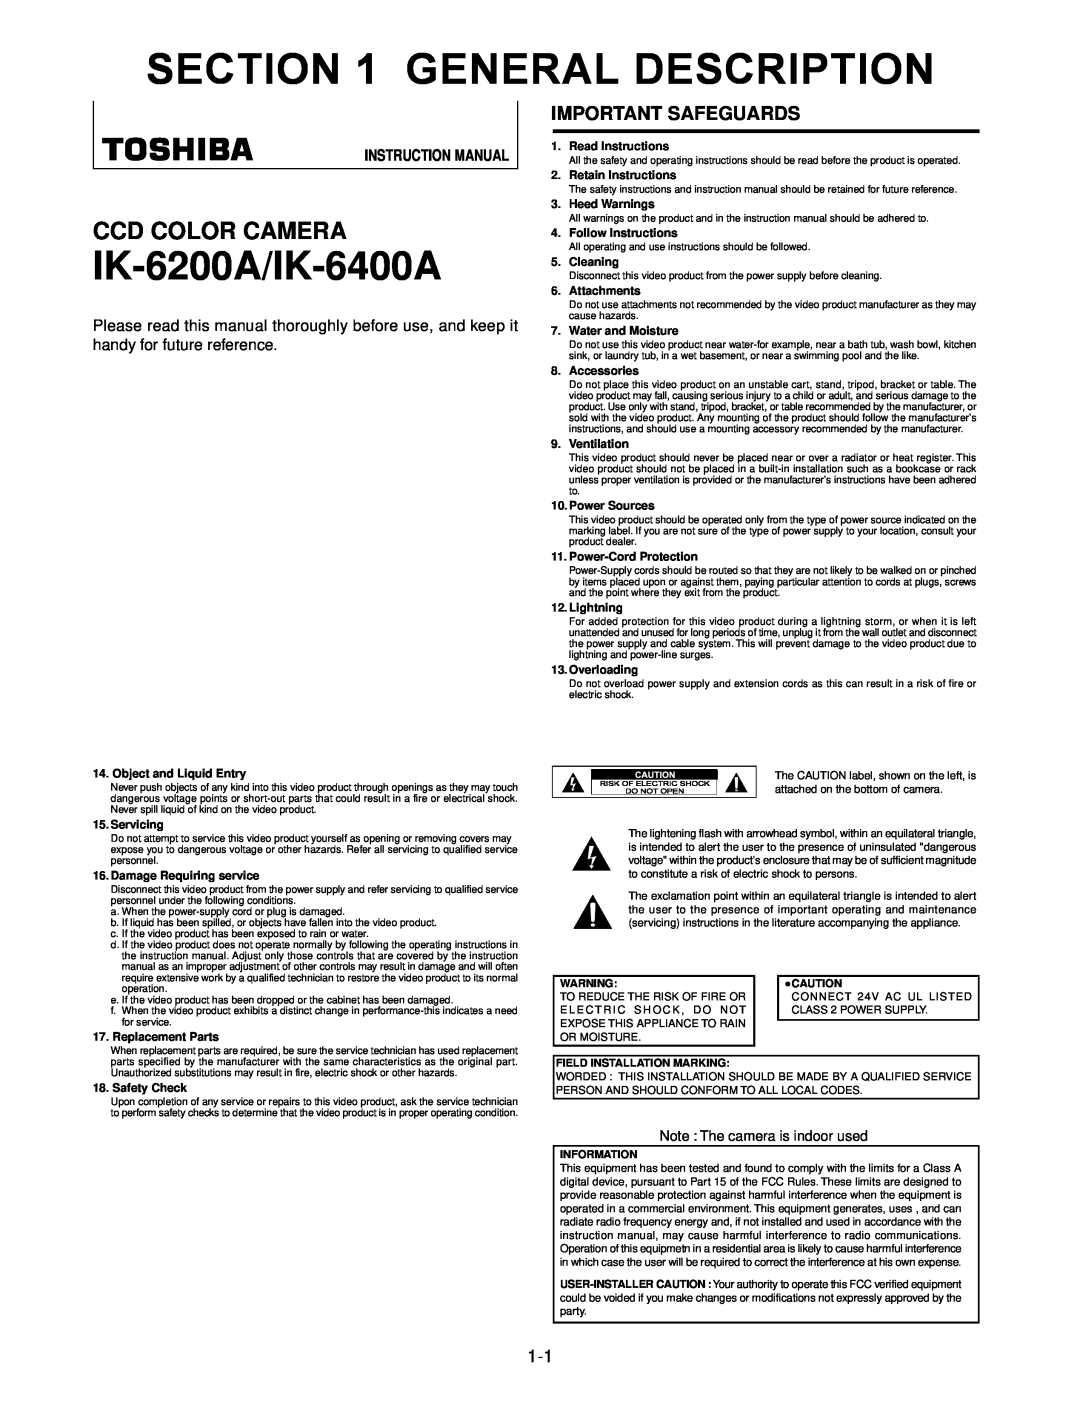 Toshiba Ik6200a instruction manual Important Safeguards, General Description, IK-6200A/IK-6400A, Ccd Color Camera 